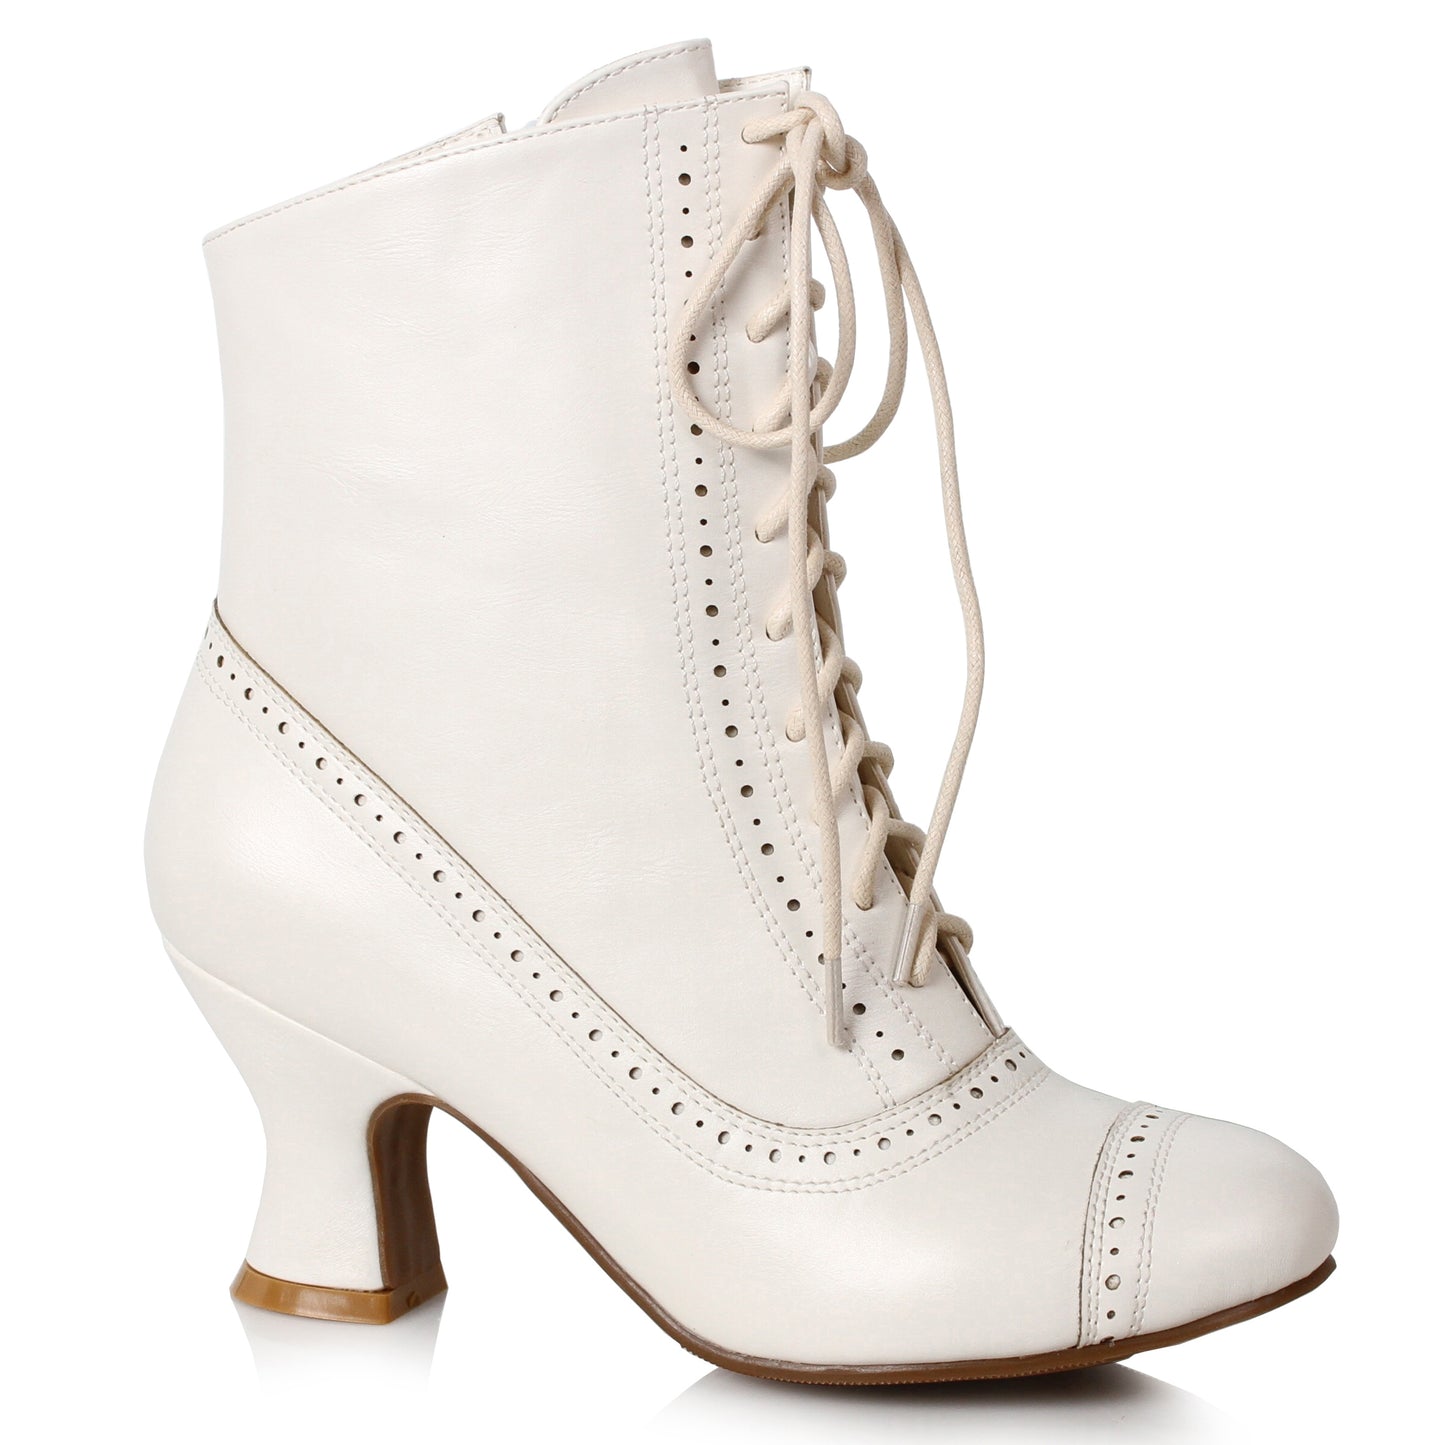 253-SARAH Ellie Shoes 2.5" Heel Victorian Bootie ANKLE BOOT 2 INCH HEEL